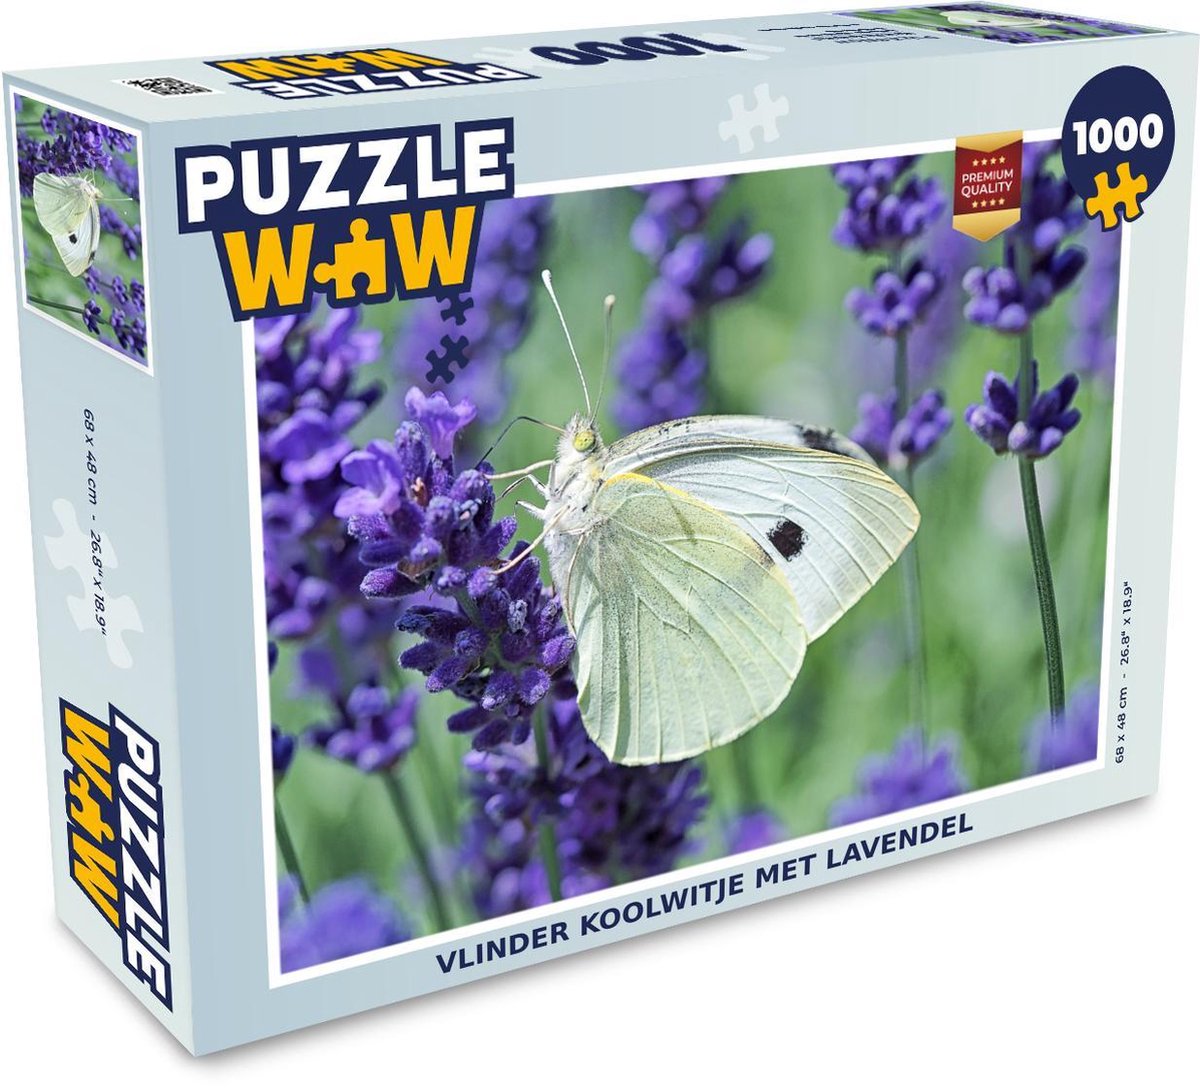 Afbeelding van product Puzzel 1000 stukjes volwassenen Koolwitje 1000 stukjes - Vlinder koolwitje met lavendel puzzel 1000 stukjes - PuzzleWow heeft +100000 puzzels